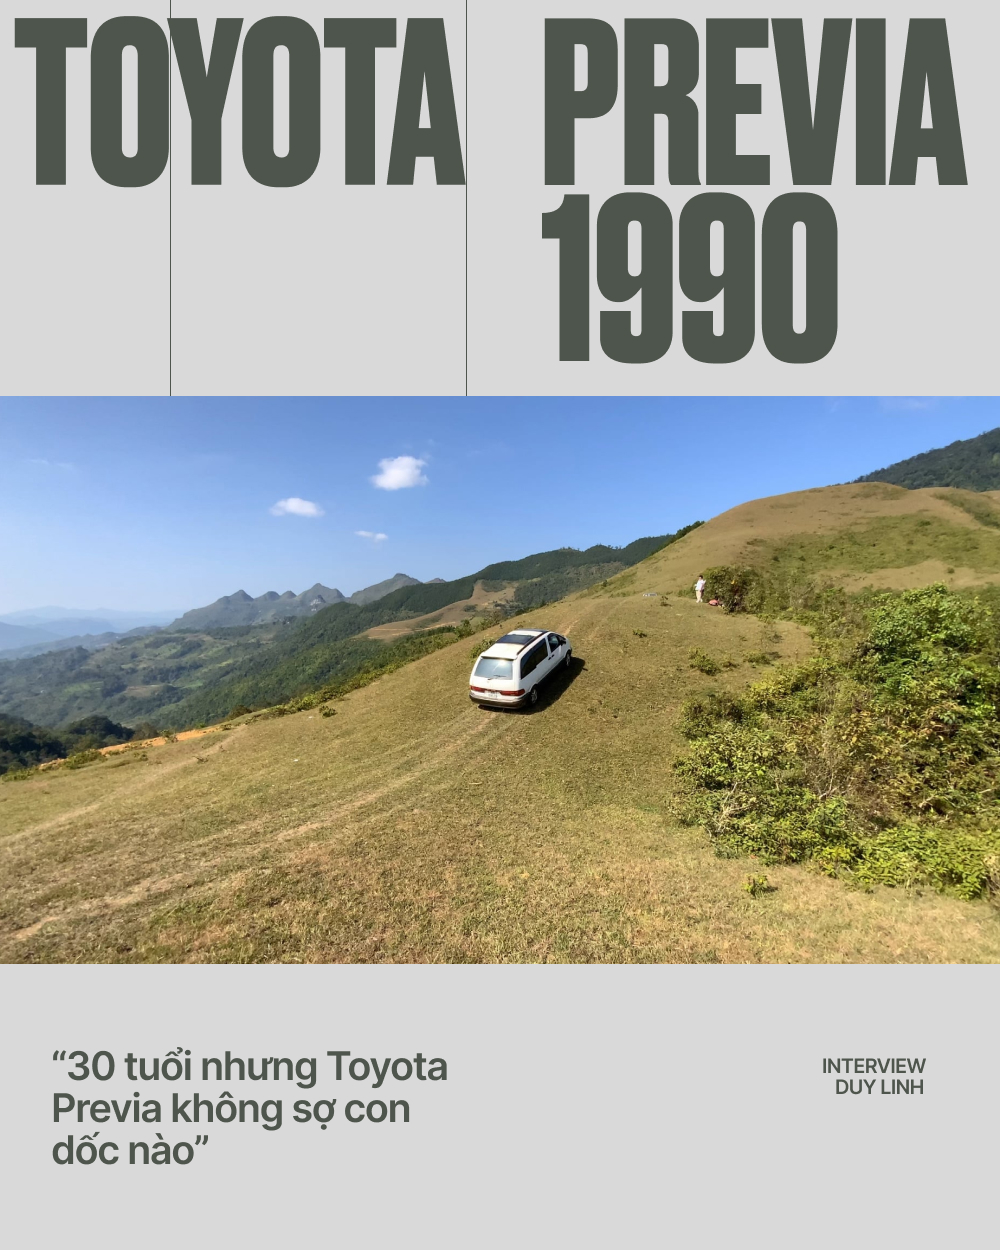 Tôi bỏ 180 triệu mua Toyota Previa 1990 chạy gần 10 năm nay: ''Ngốn xăng nhưng đáng từng đồng'' - ảnh 16